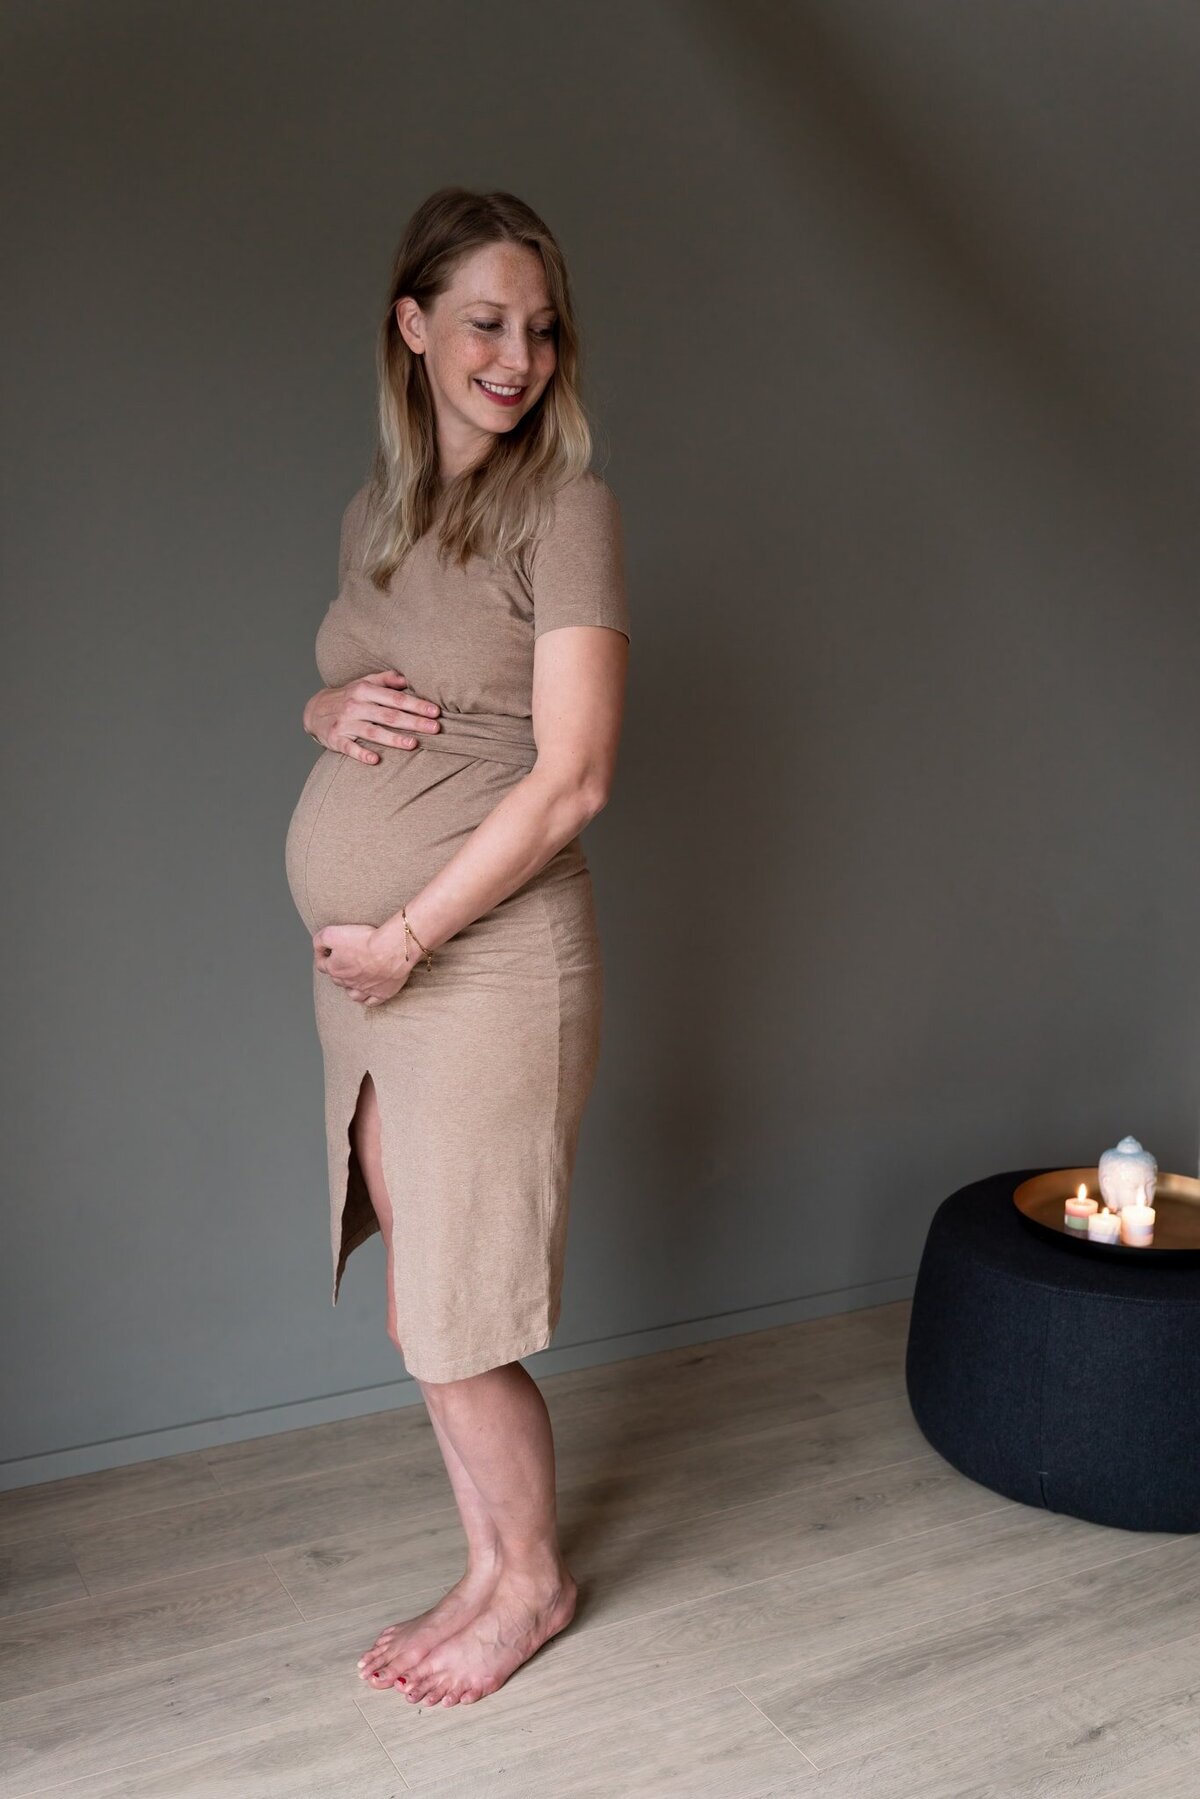 zwangerschapsshoot Groningen - zwangere vrouw natuurlijke kleuren intiem.